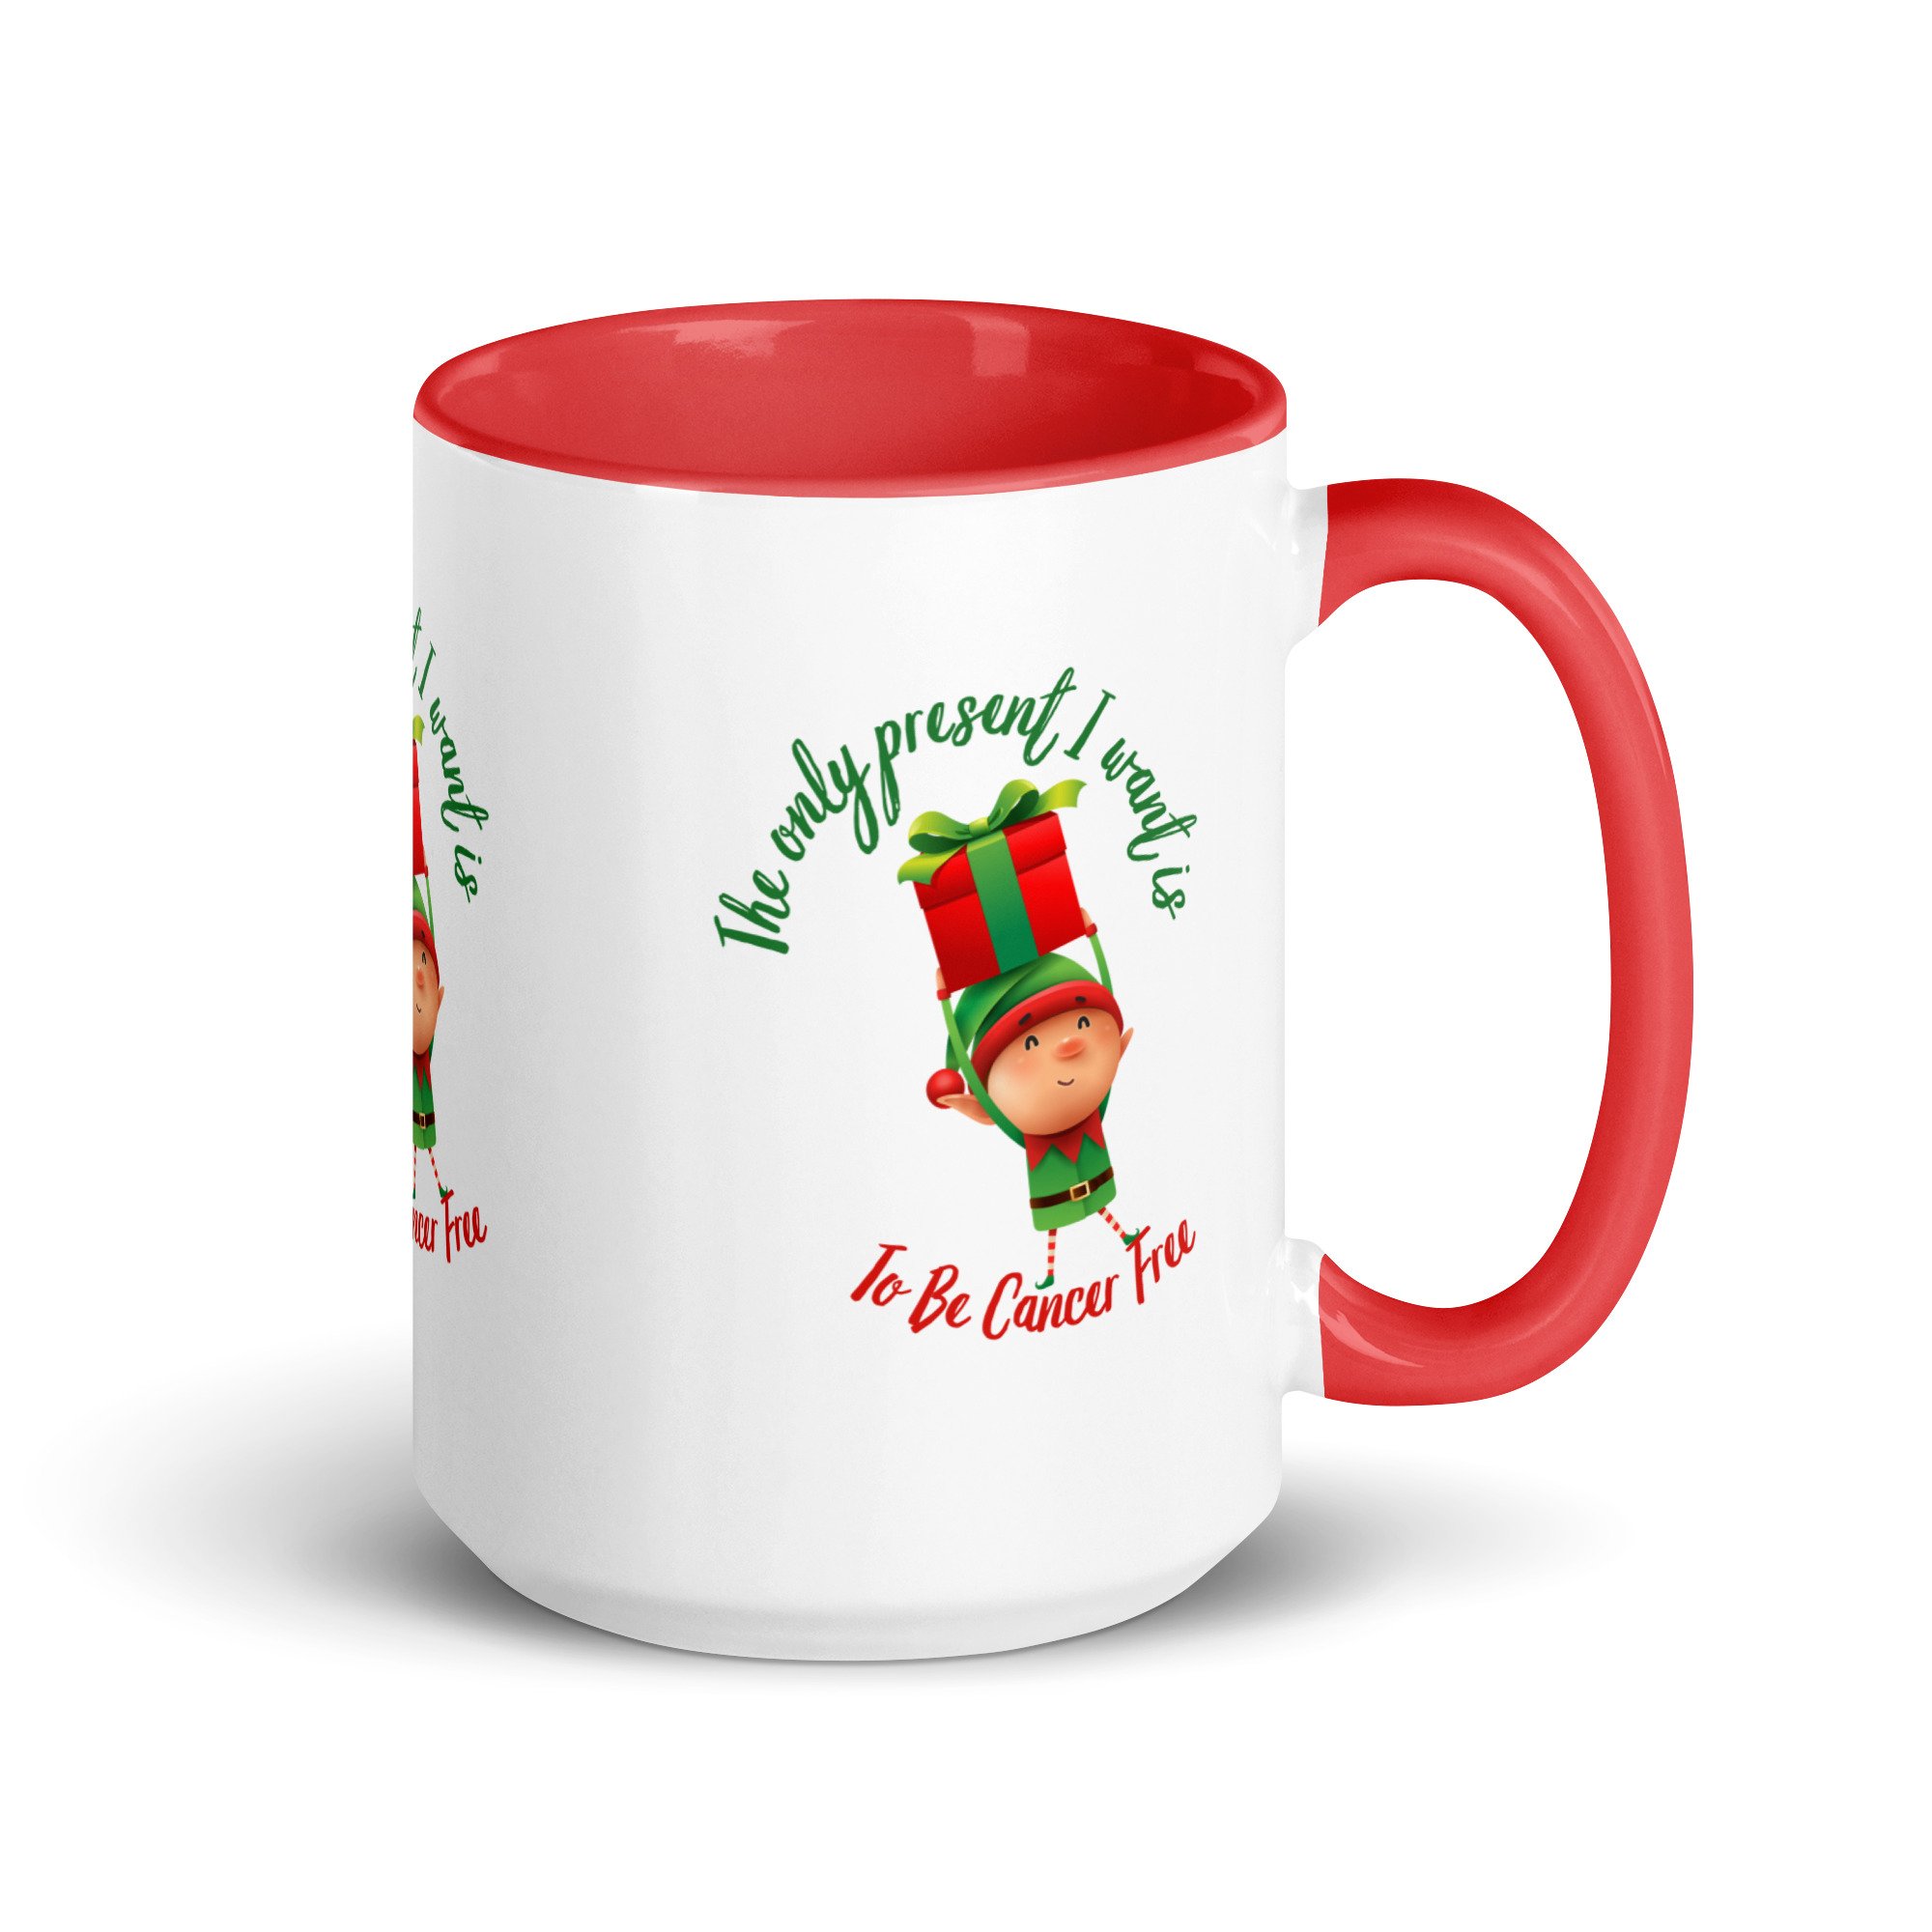 white-ceramic-mug-with-color-inside-red-15-oz-right-6563749e9ce3b.jpg